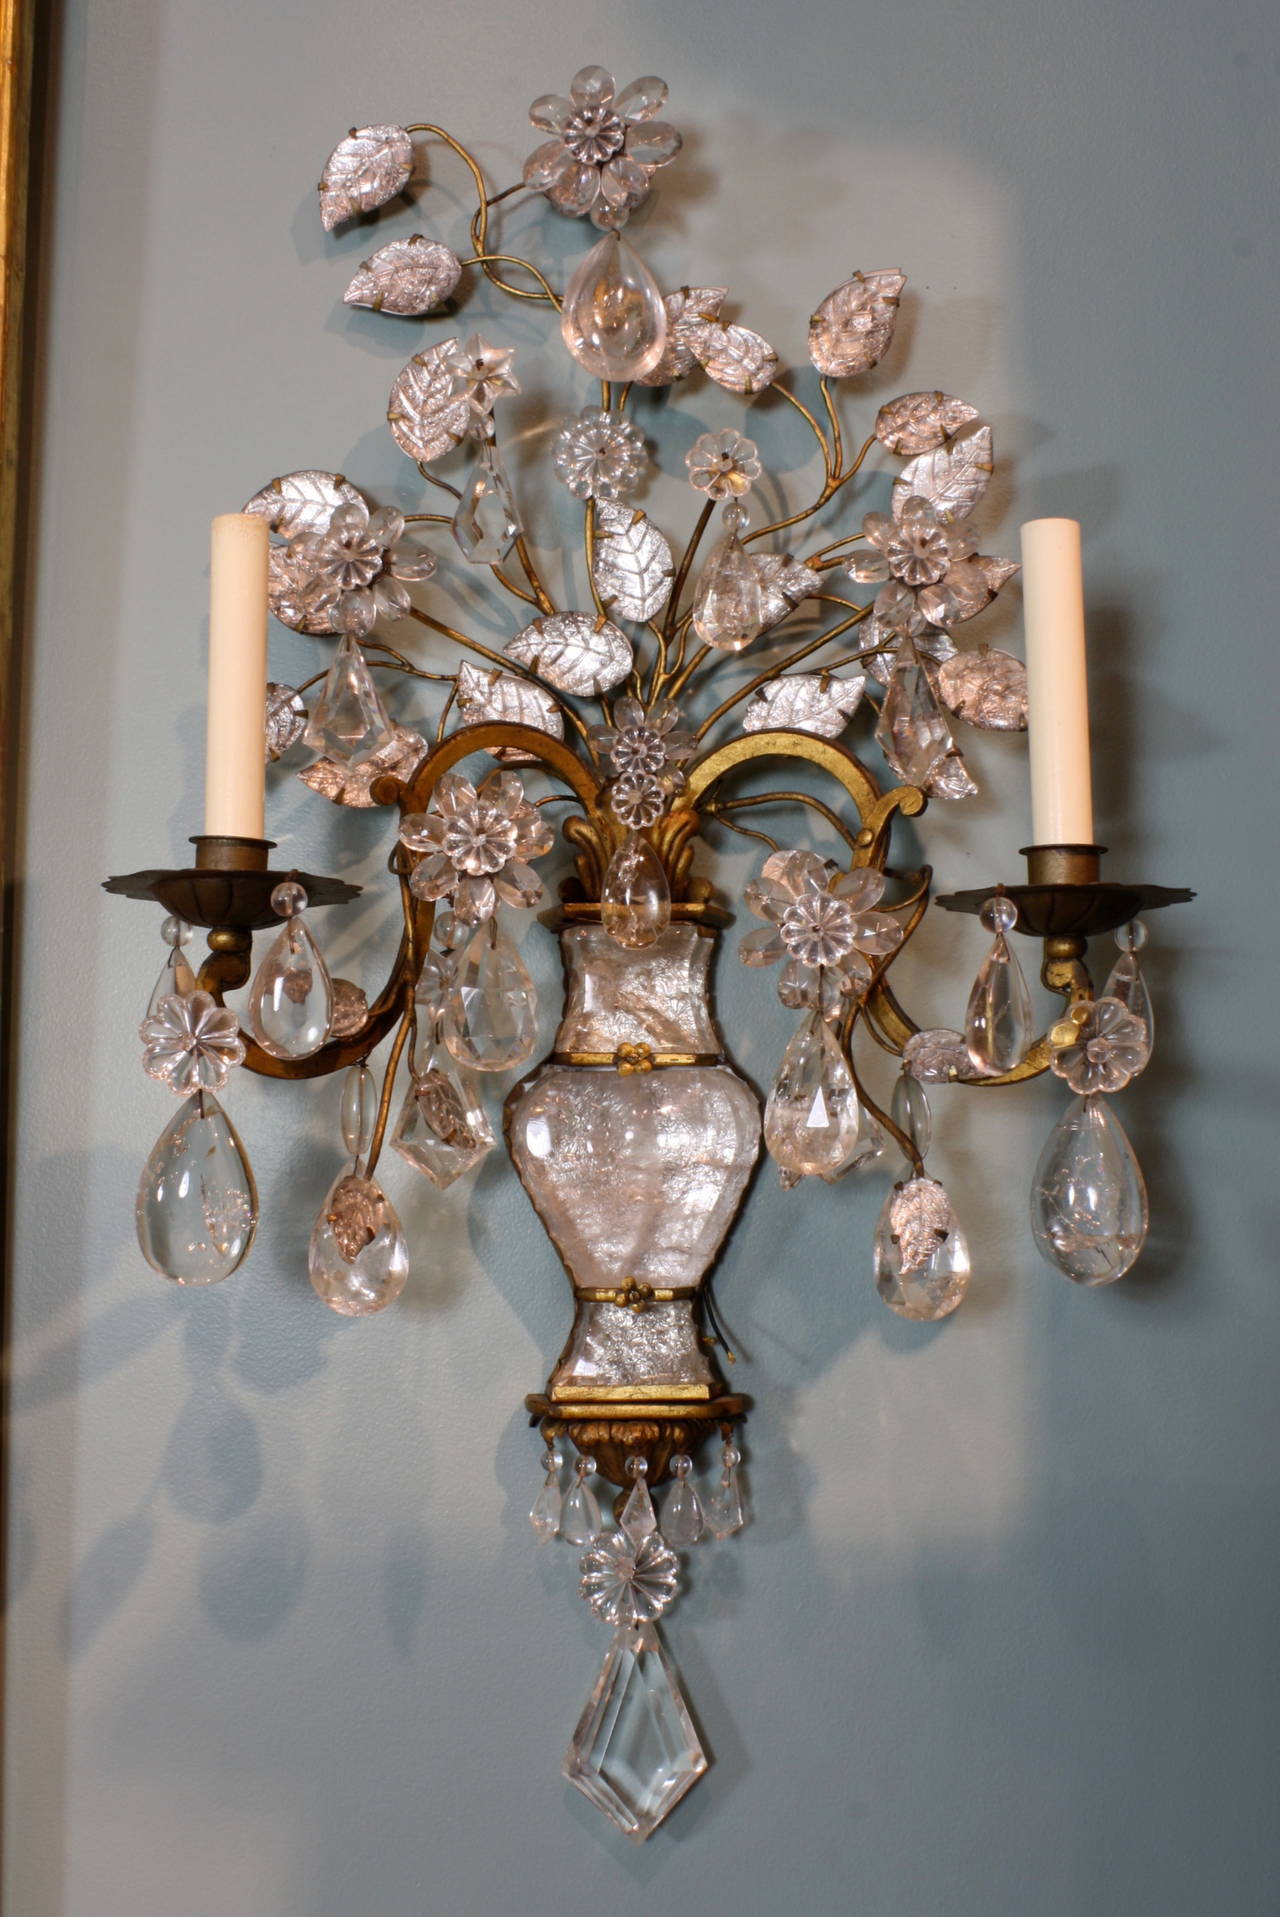 Une grande et impressionnante paire d'appliques murales à deux bras en métal doré, verre et cristal de roche, attribuées à la Maison Baguès (vers 1950), richement décorées de feuilles de verre, d'une variété de cristaux taillés et de cristal de